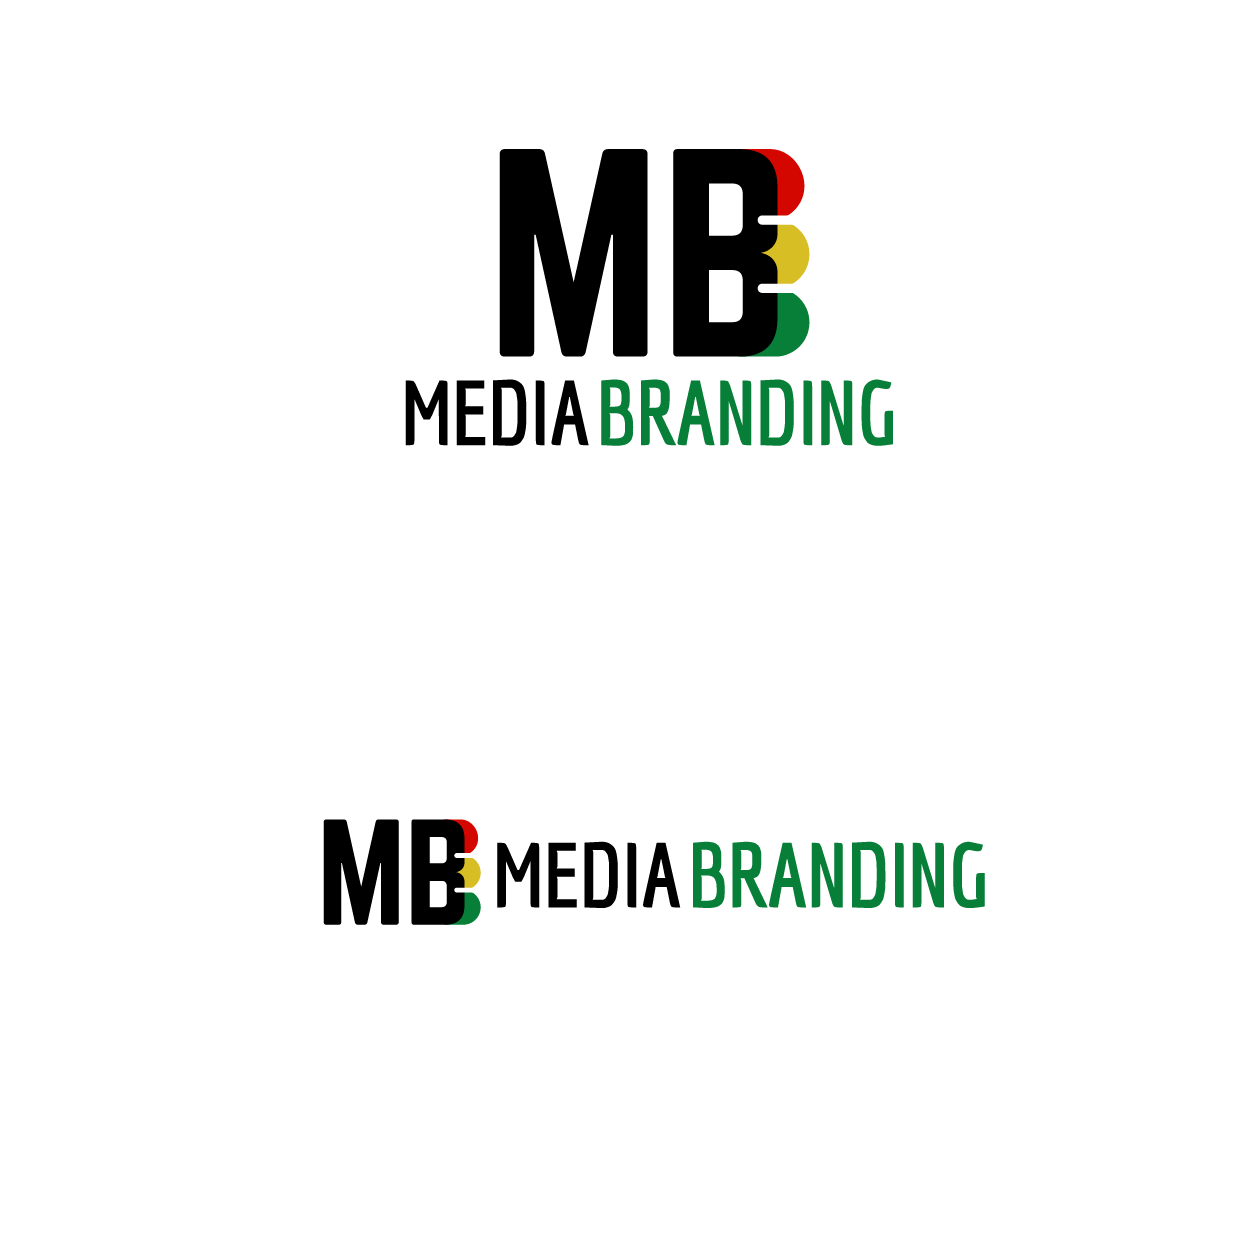 mediabranding-01.png